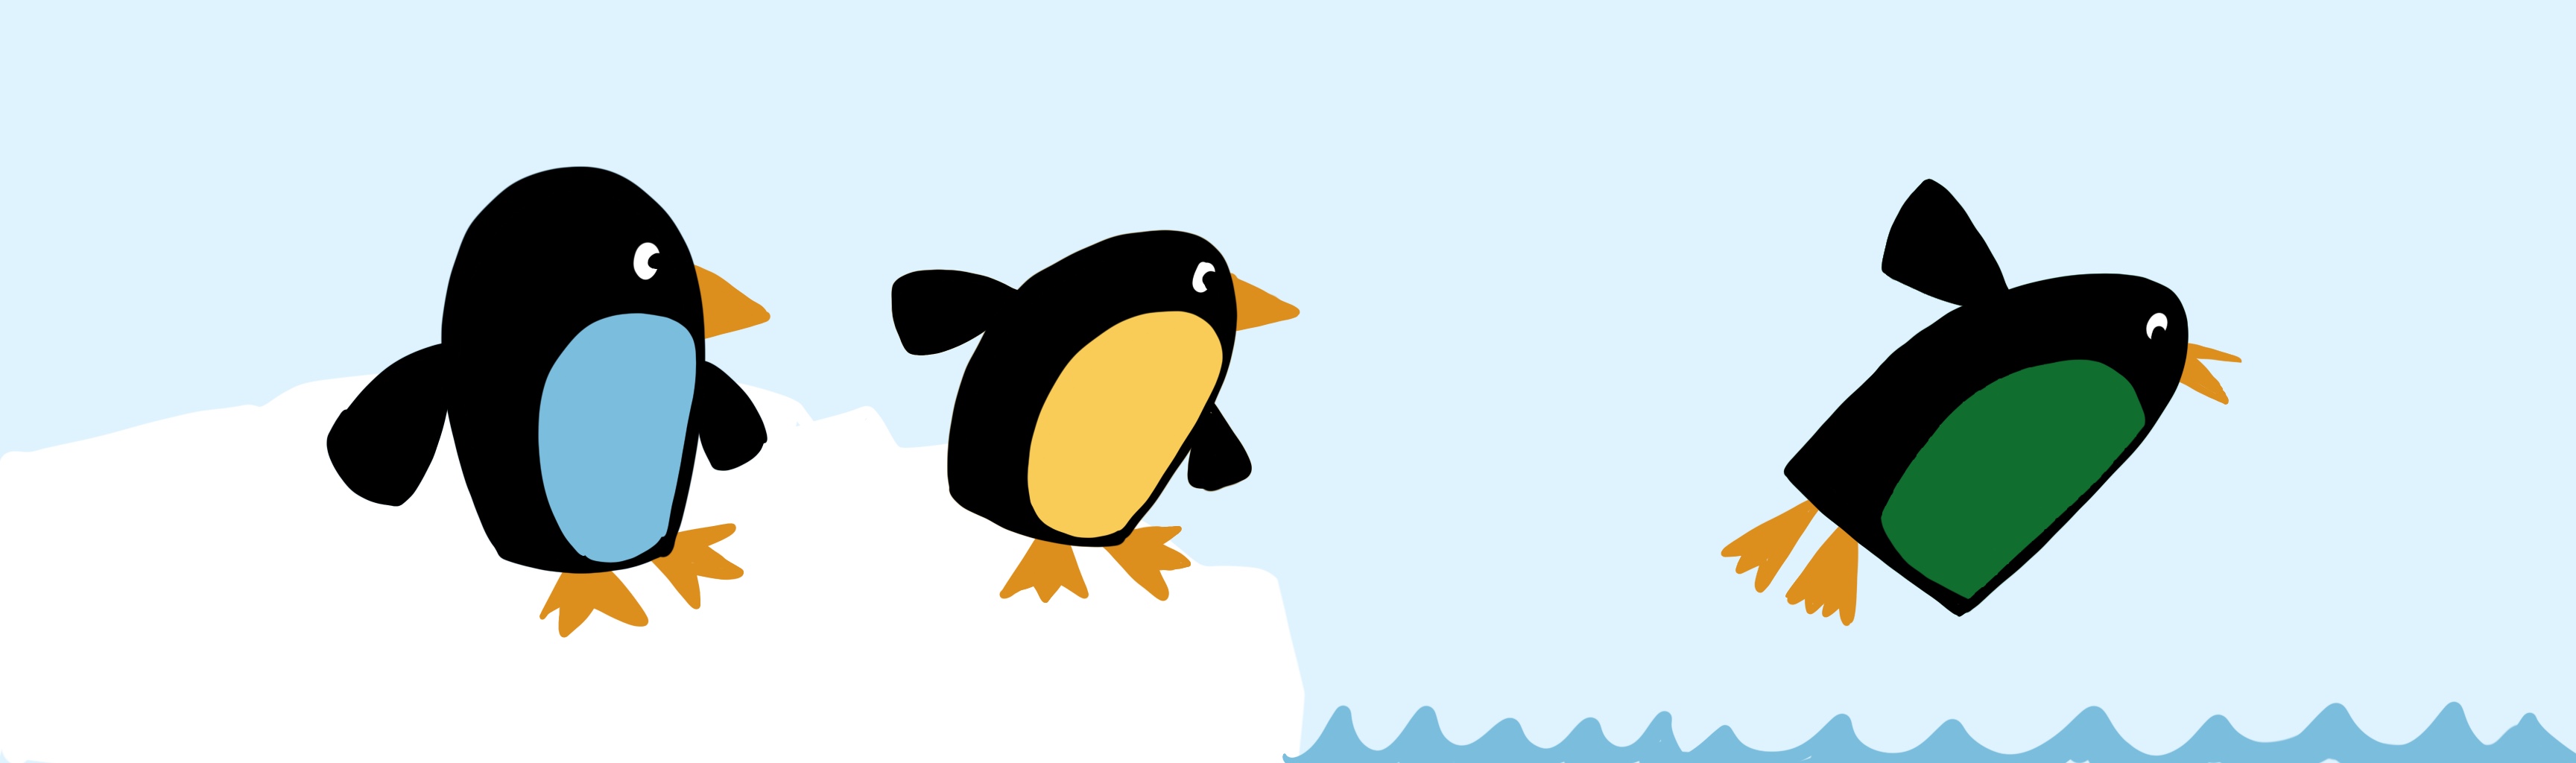 Zeichnung dreier Pinguine. Einer springt gerade lustig von einer Eisscholle ins Wasser. Die zwei anderen gucken ihm von der EWischolle hinterher.